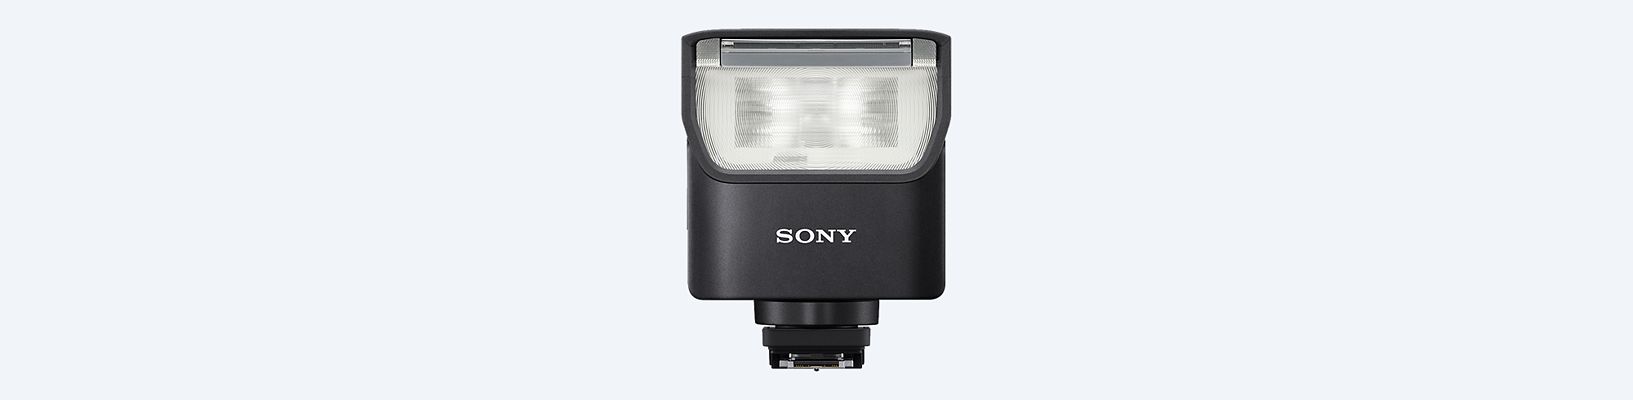 Sony HVL-F60RM2, Flash inalámbrico profesional GN60